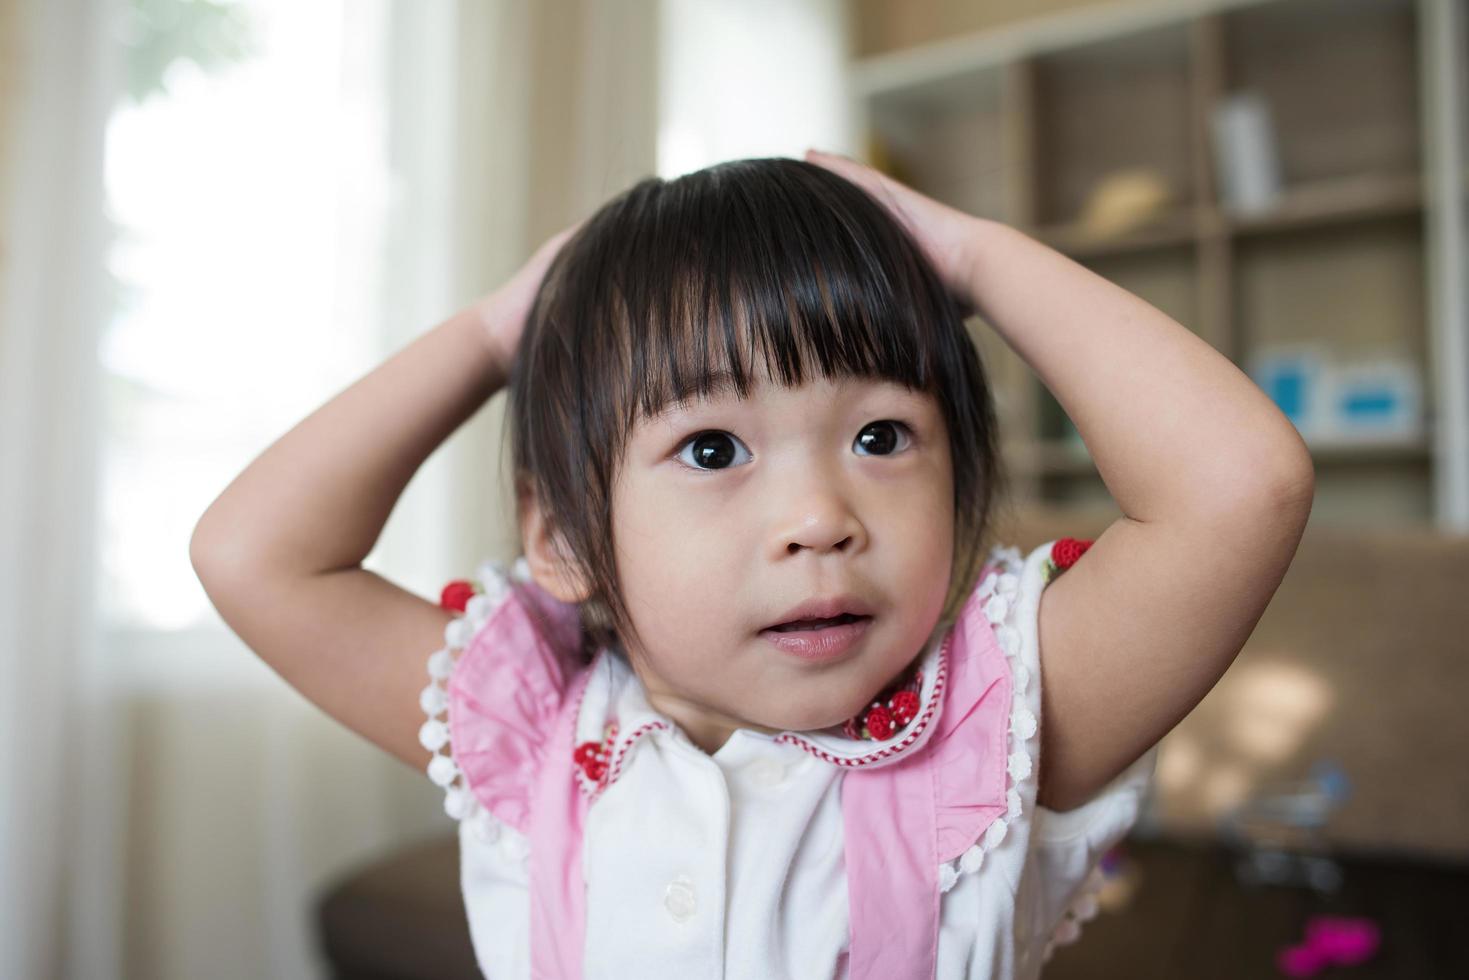 ritratto di una bambina asiatica che gioca nella sua casa foto